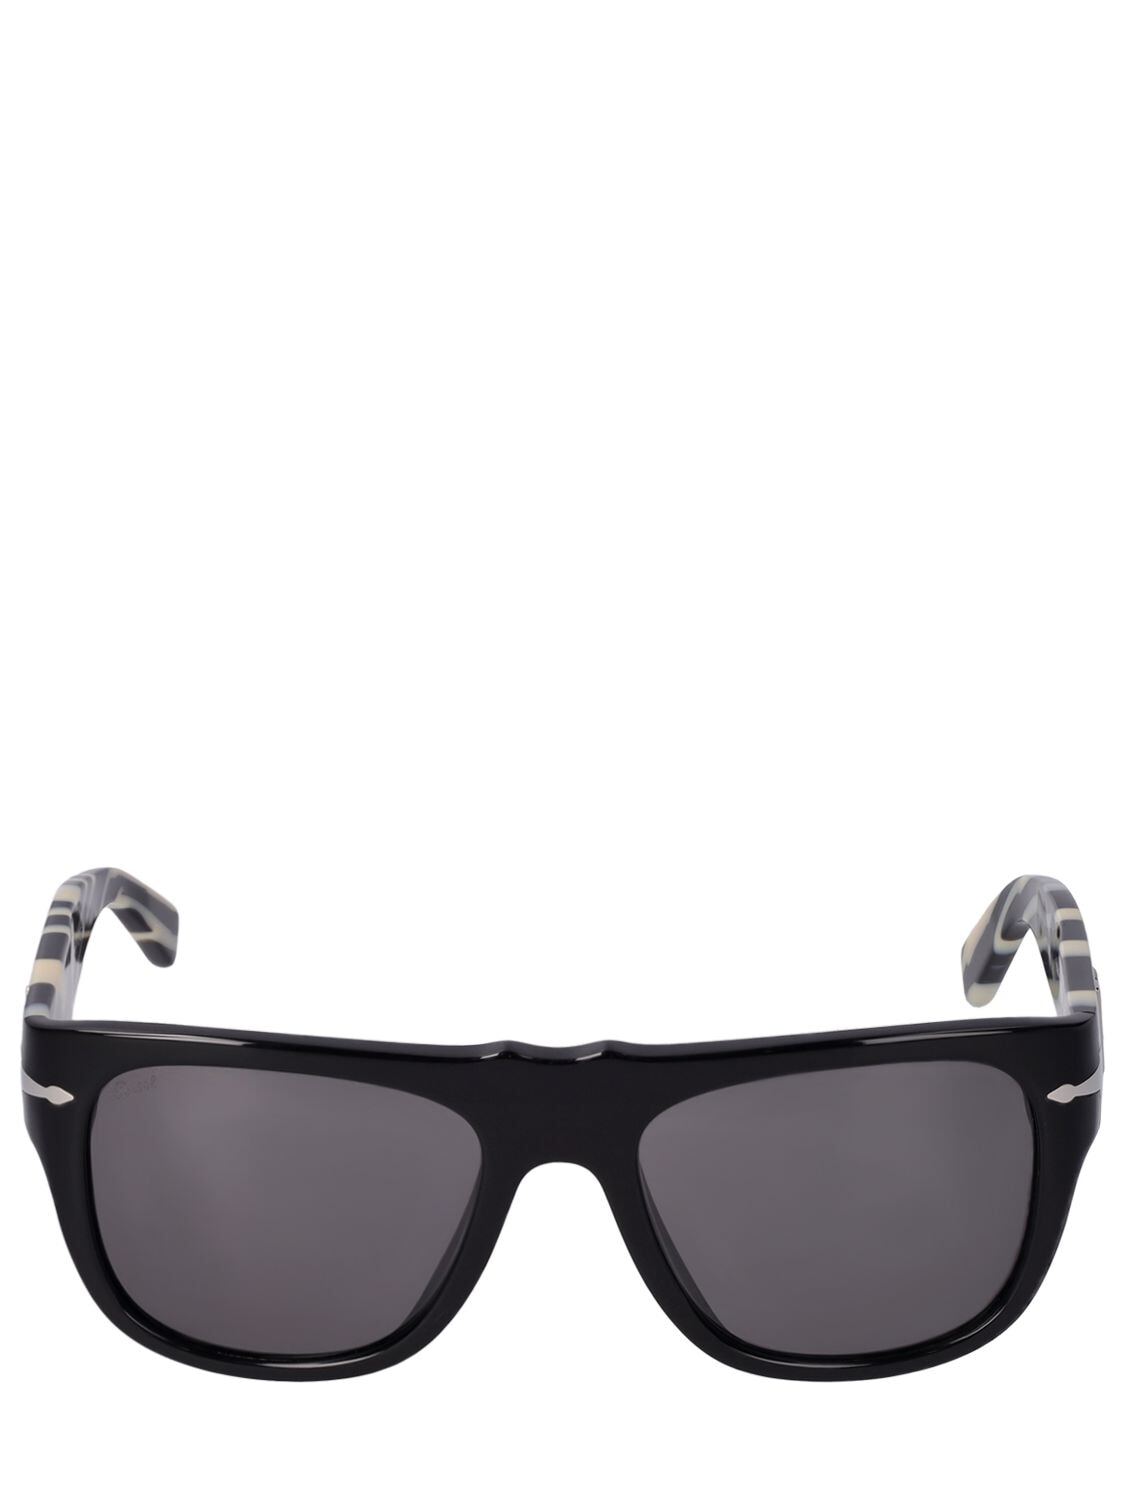 DOLCE & GABBANA D&g X Persol Squared Acetate Sunglasses in black / grey